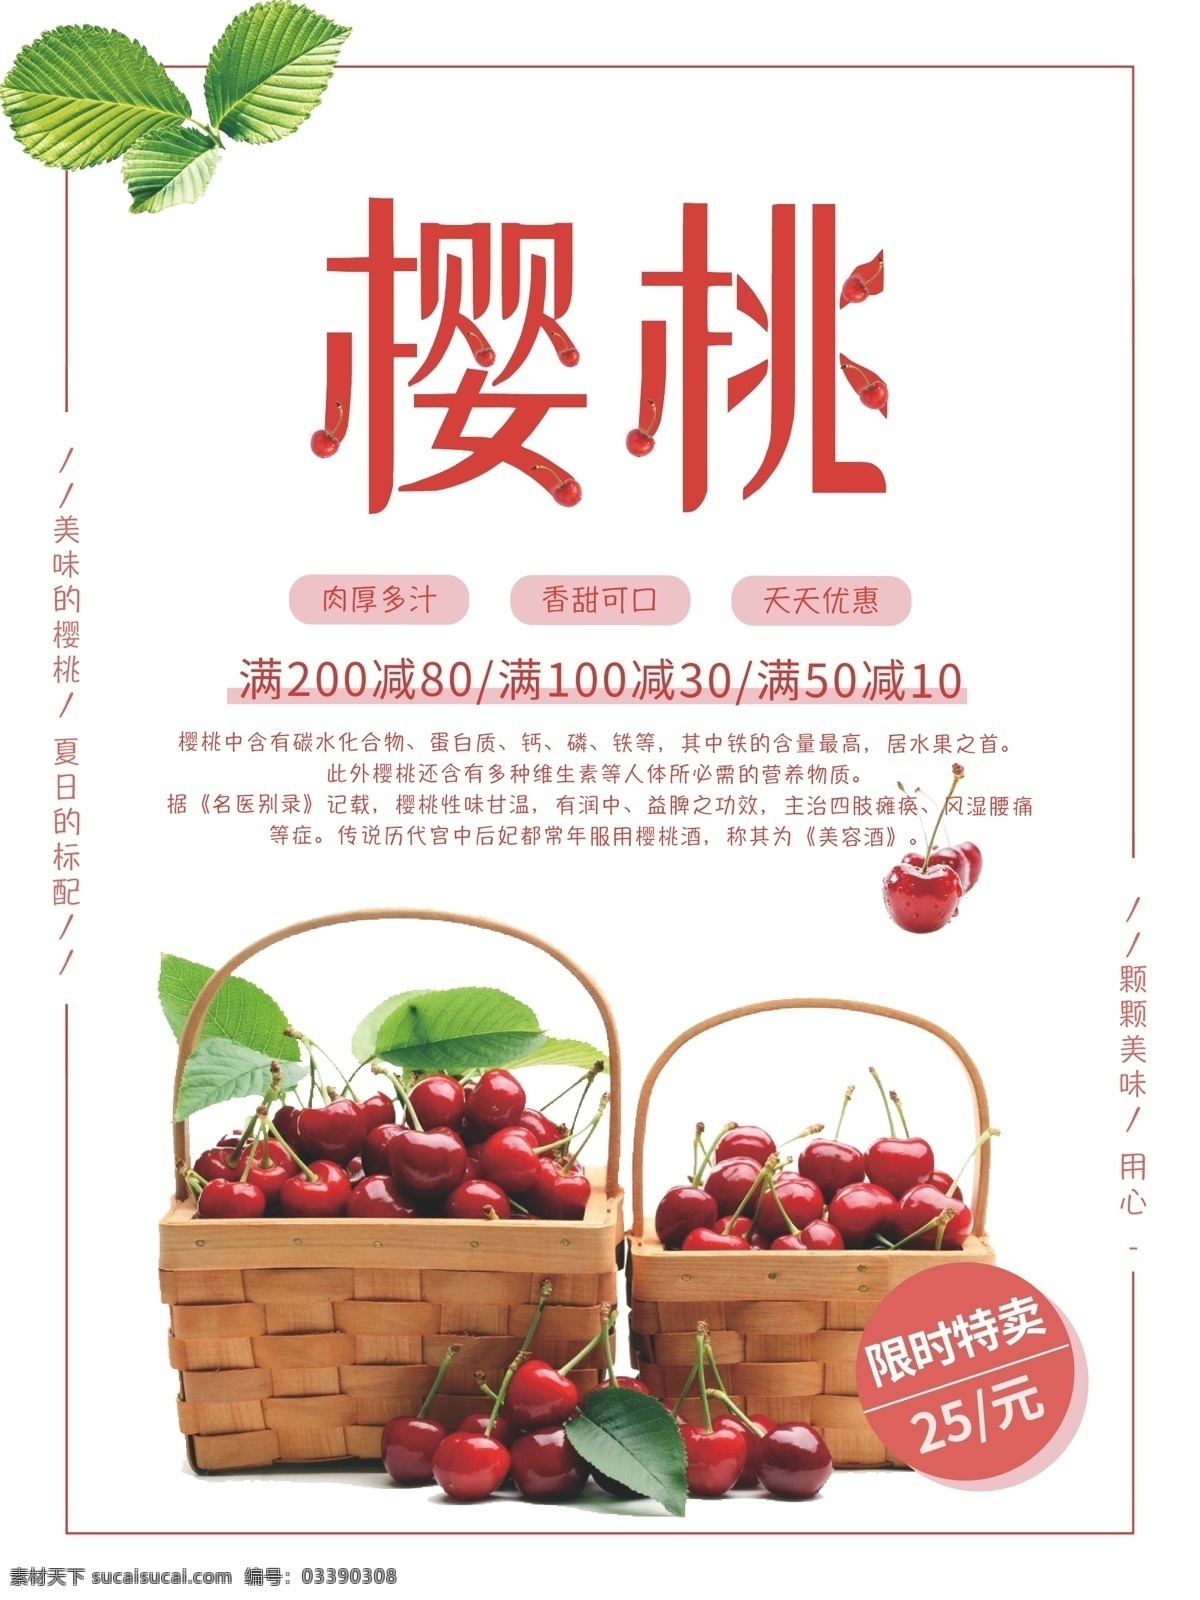 樱桃 促销活动 海报 促销 活动 水果促销 水果 活动海报 樱桃海报 水果海报